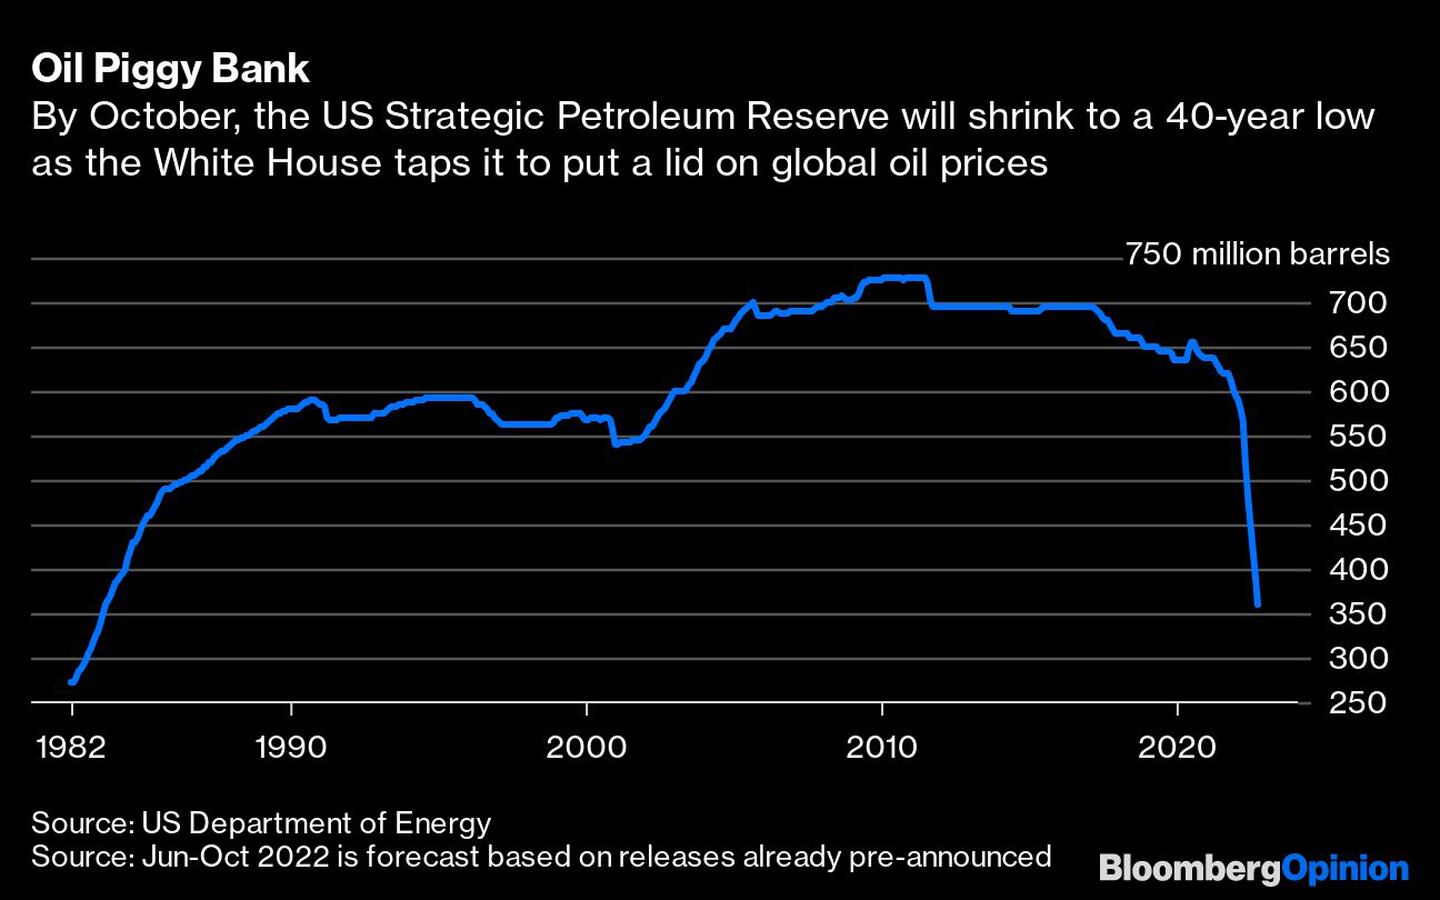 Para octubre, la reserva estratégica de petróleo de EE.UU. se reducirá a un mínimo de 40 años mientras la Casa Blanca busca ponerle un tope a los precios globales del petróleodfd